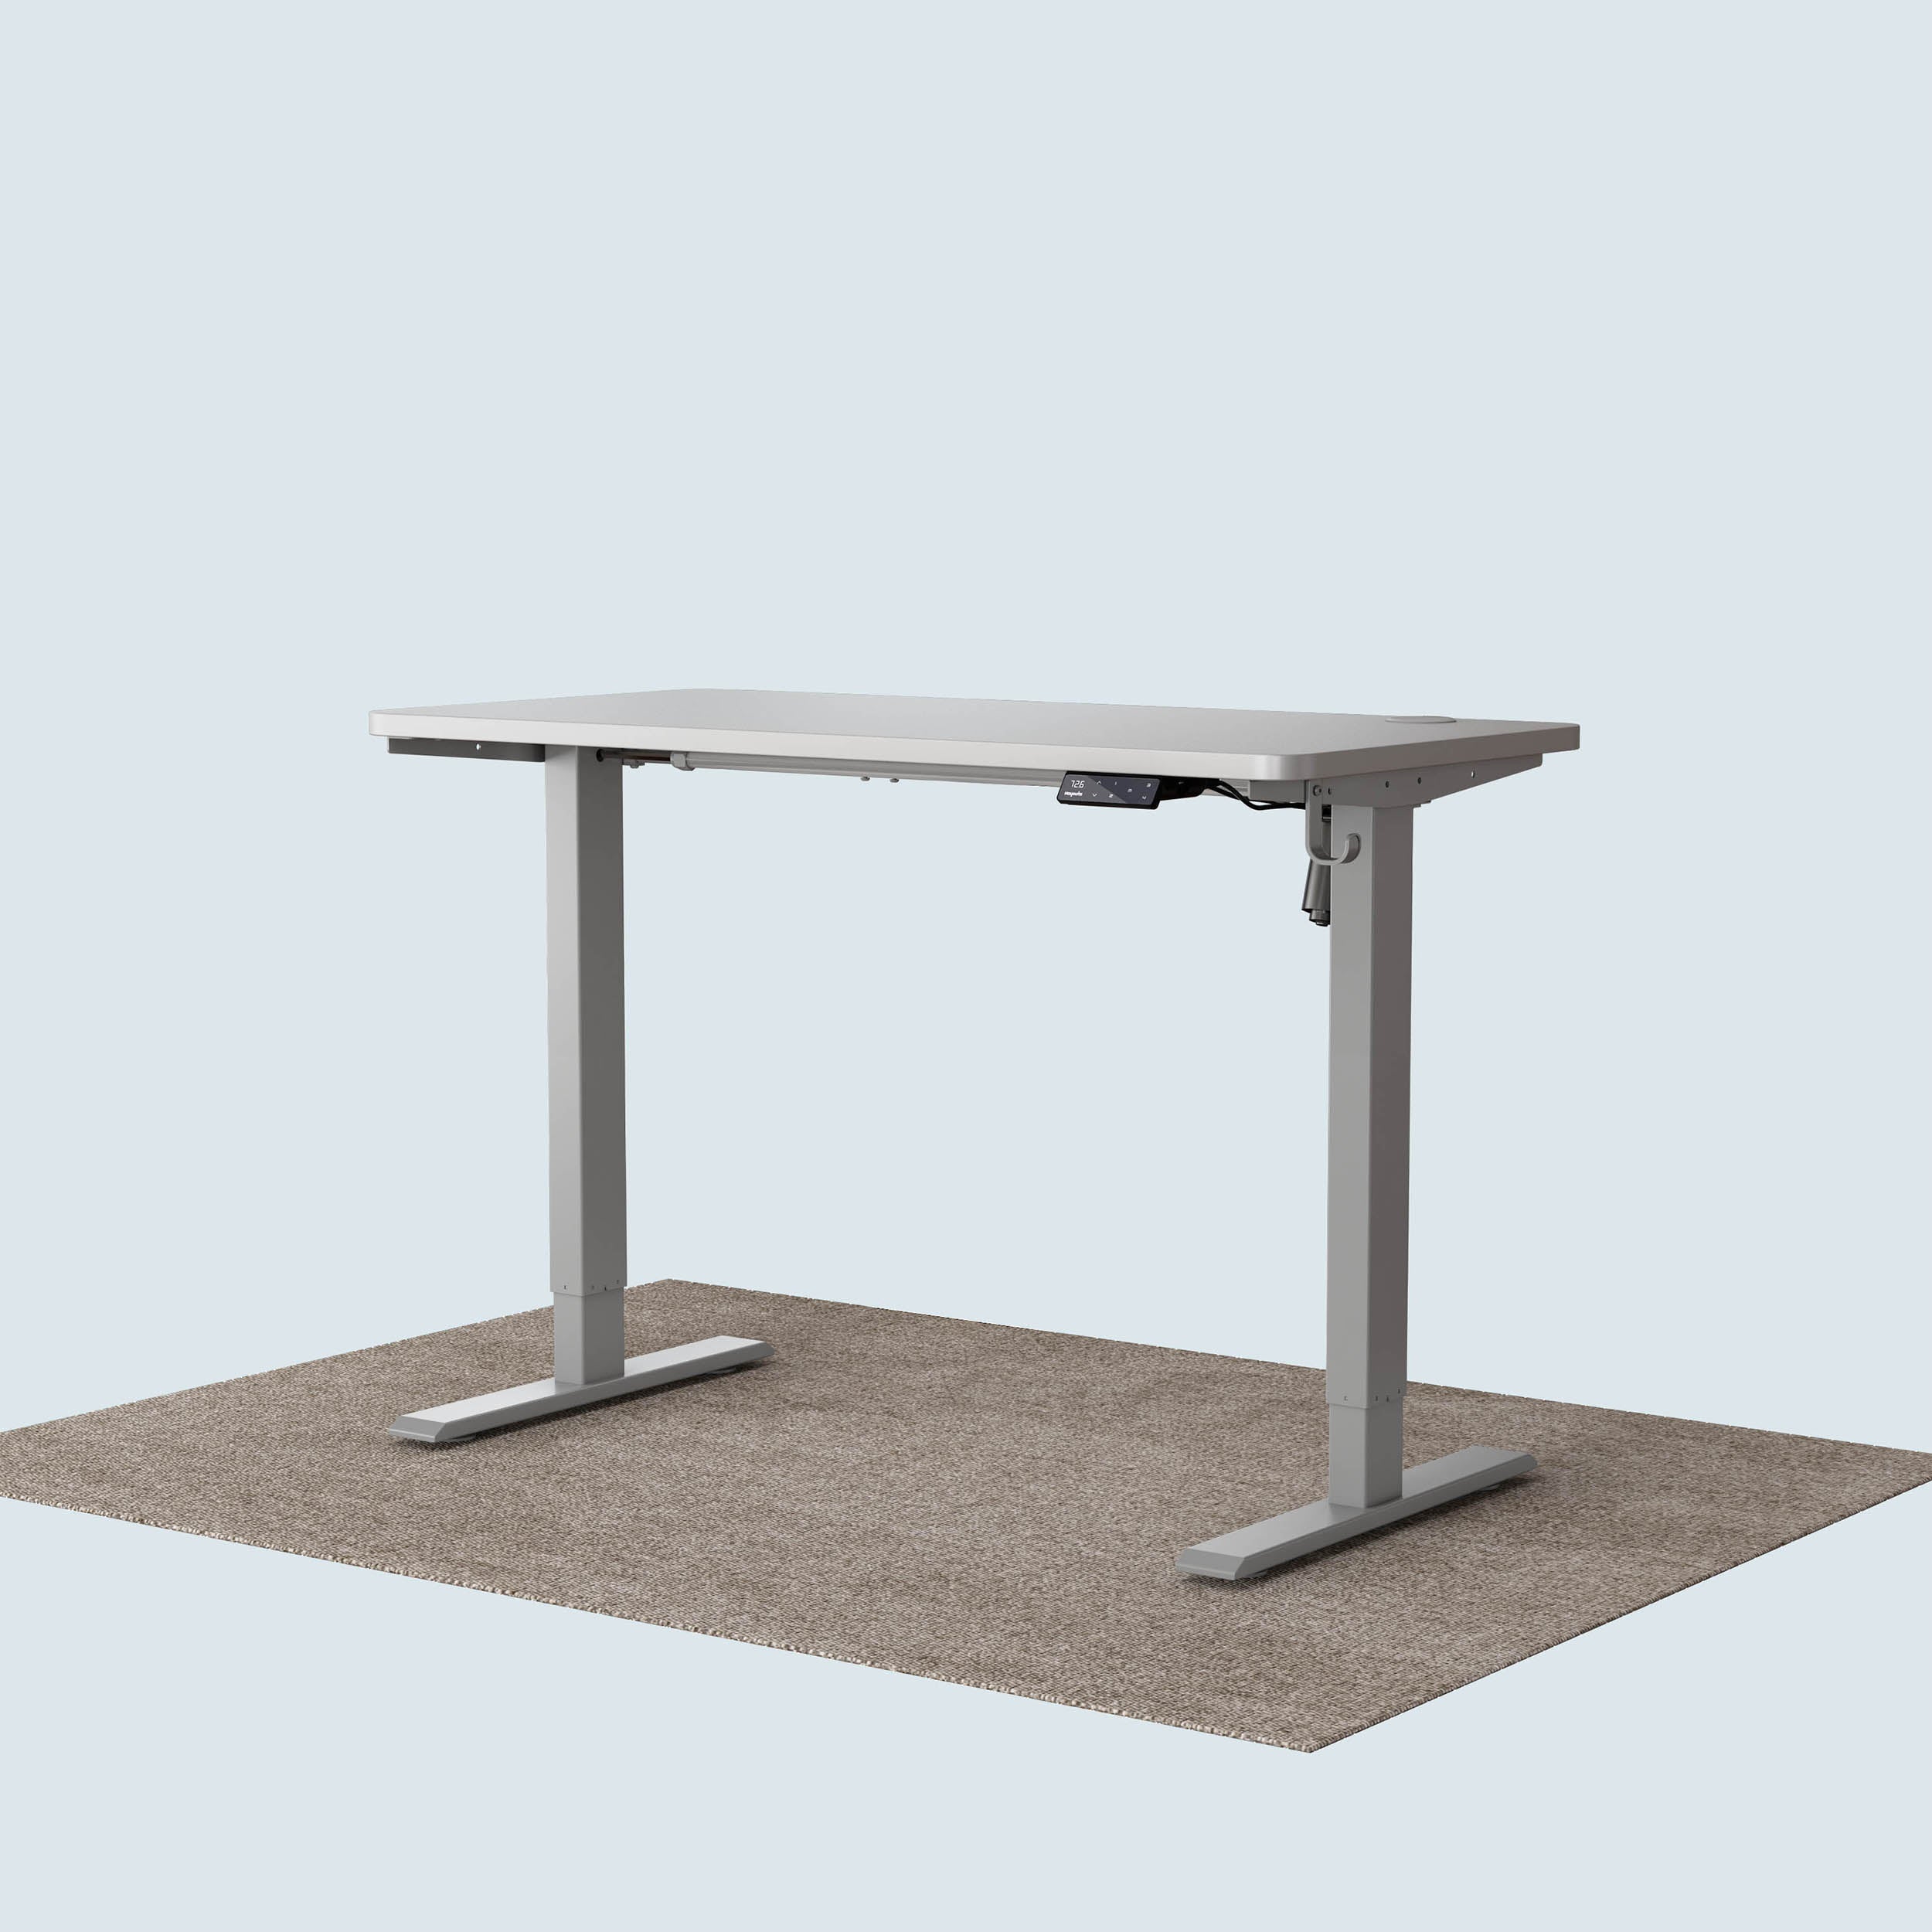 Maidesite T1 Basic standing desk grey frame and 120x60cm white desktop